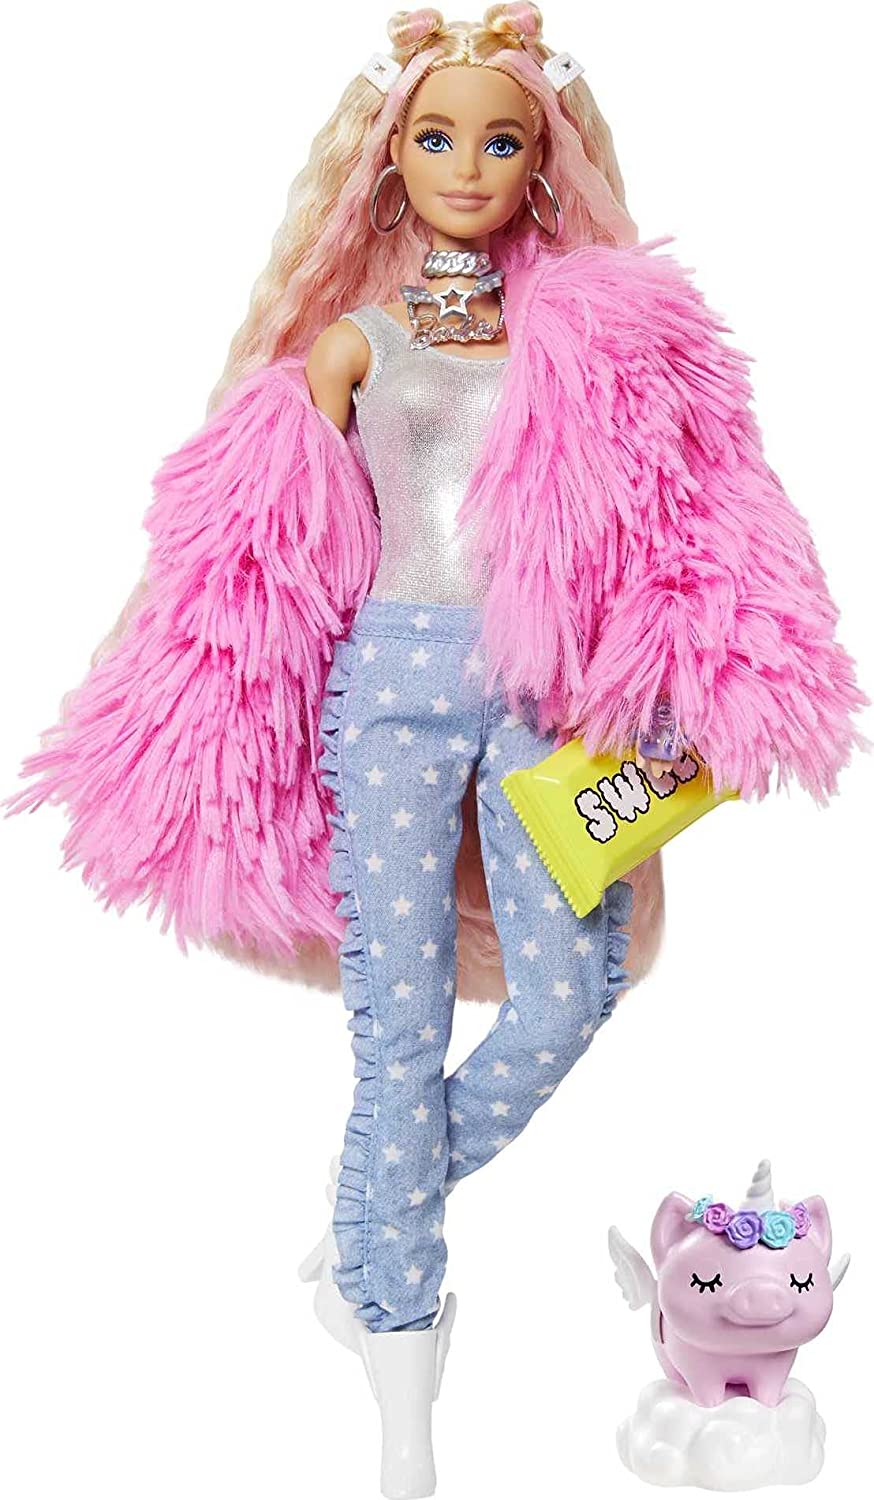 Barbie Extra Doll en manteau rose duveteux avec jouet cochon licorne